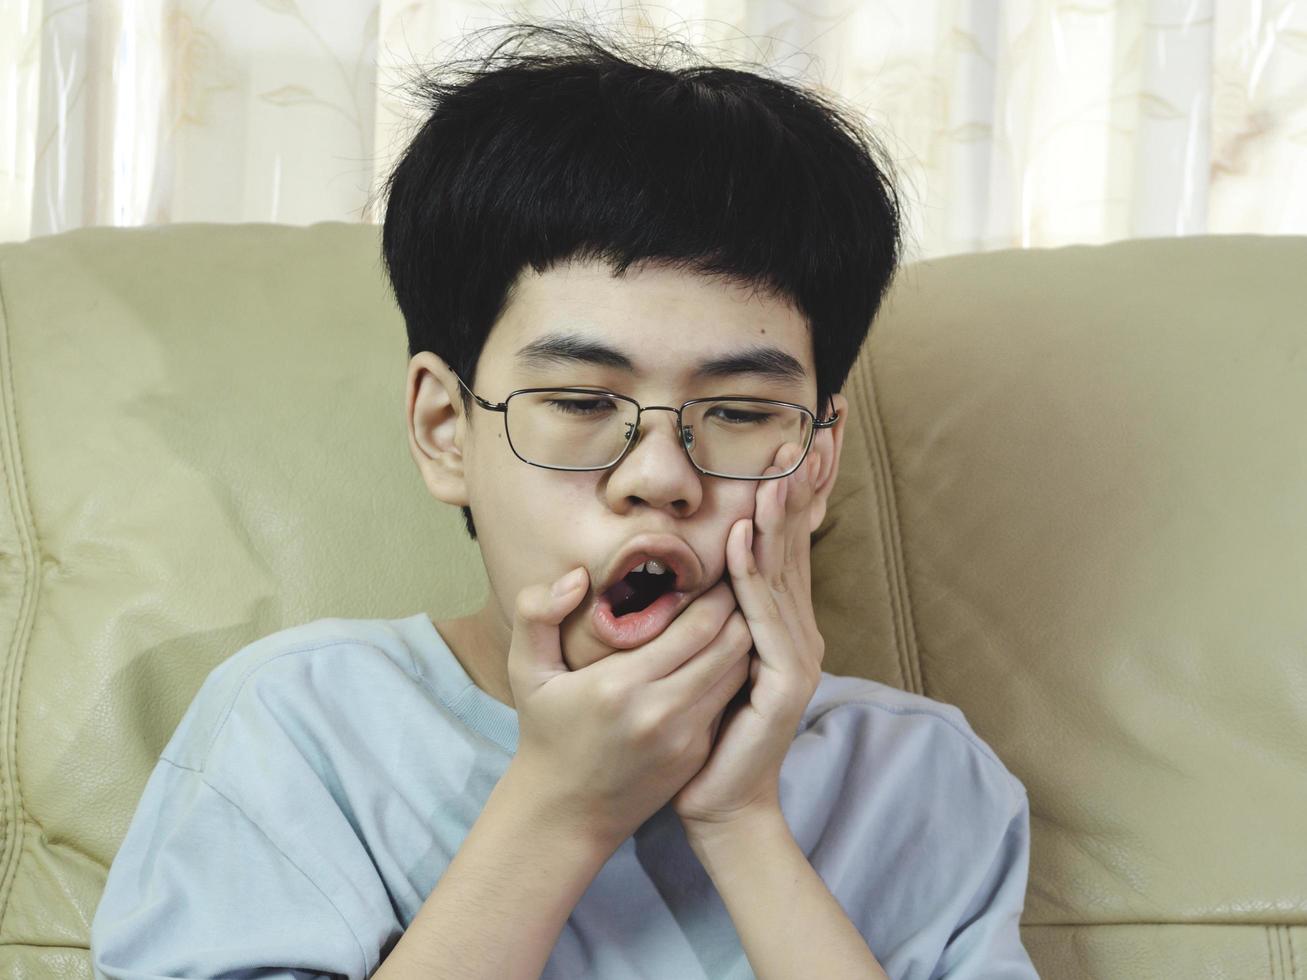 kleine Aziatische jongen lijdt aan kiespijn. hij verdrietig met tandpijn, tandziekte, kind met tandproblemen. afspraak tandarts maken. foto